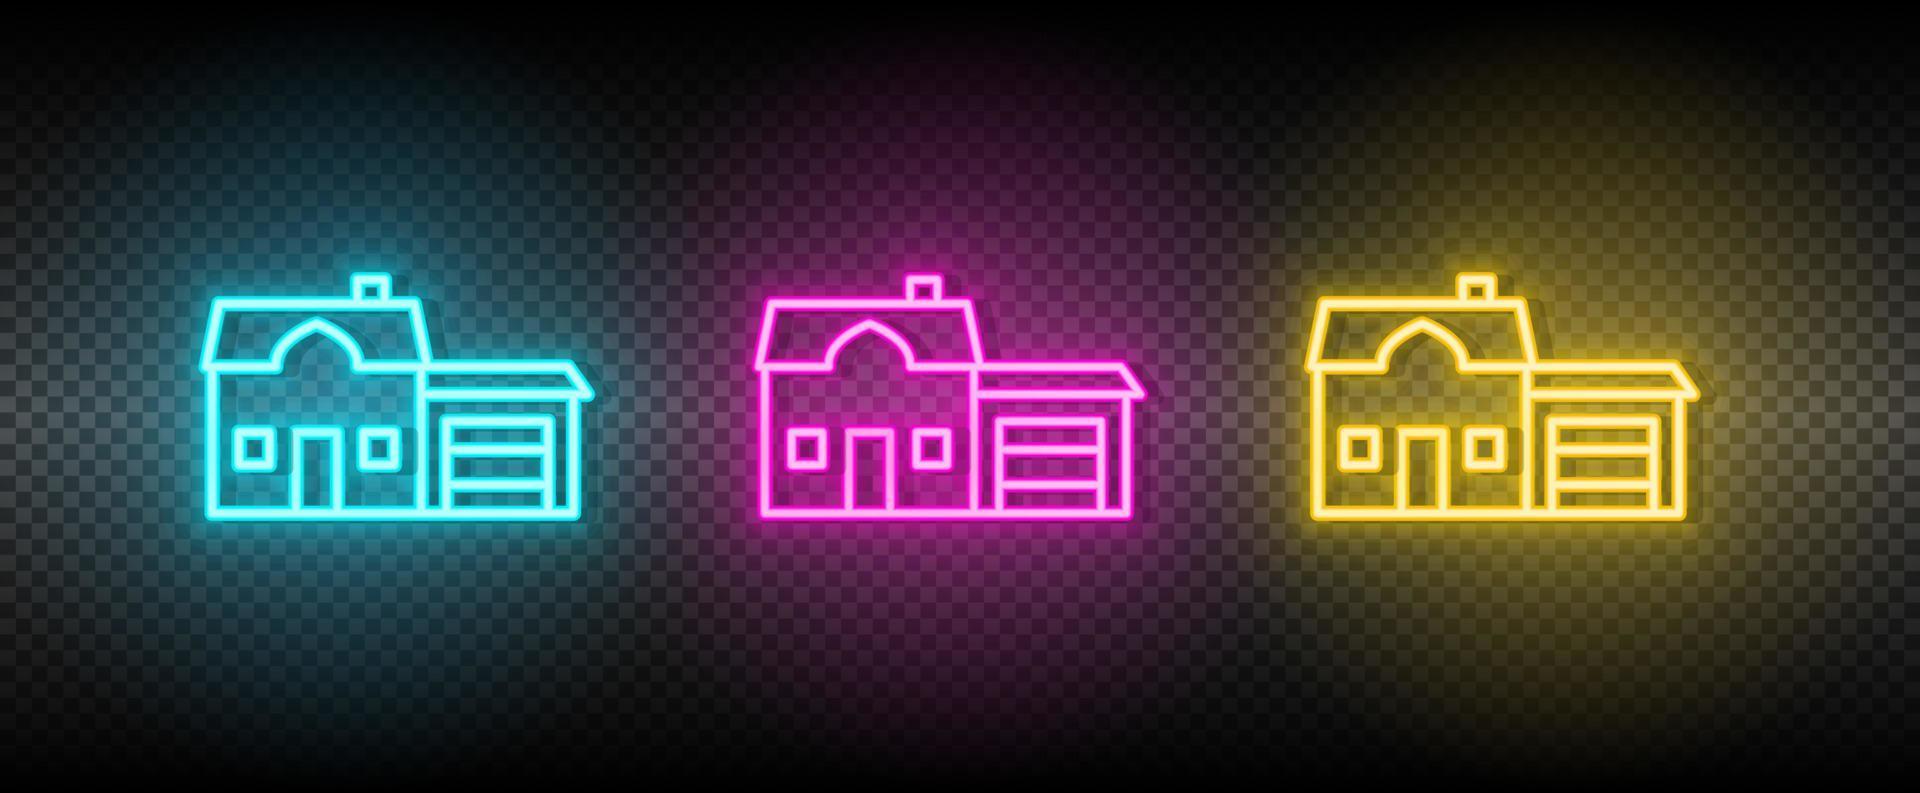 echt landgoed vector garage, huis. illustratie neon blauw, geel, rood icoon reeks